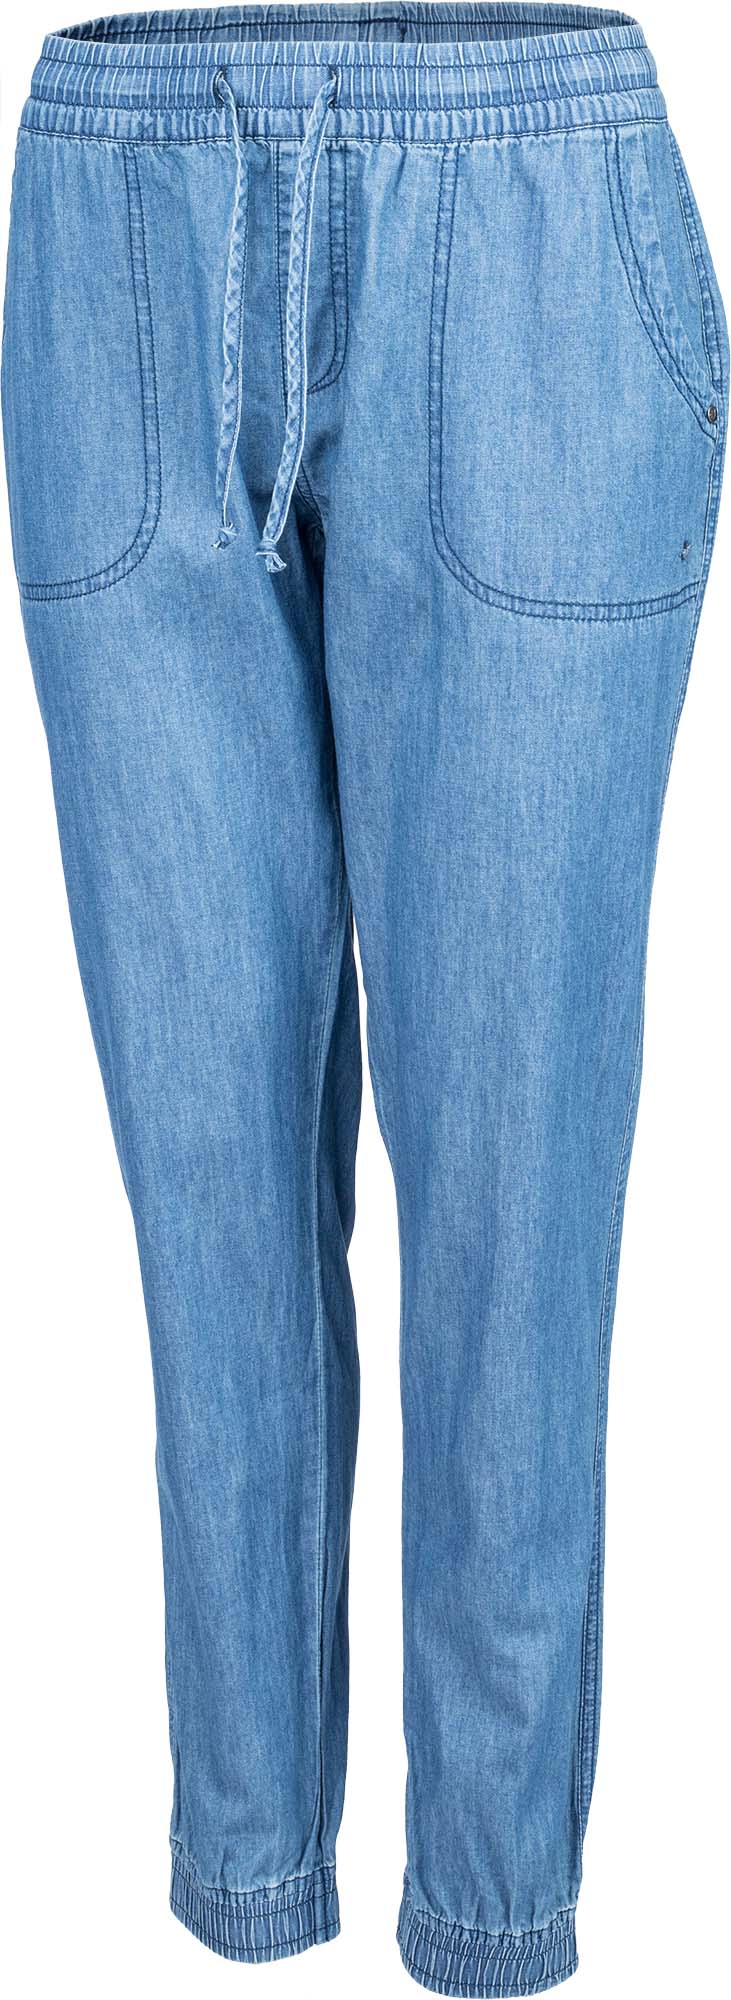 Dámske plátené nohavice džínsového vzhľadu